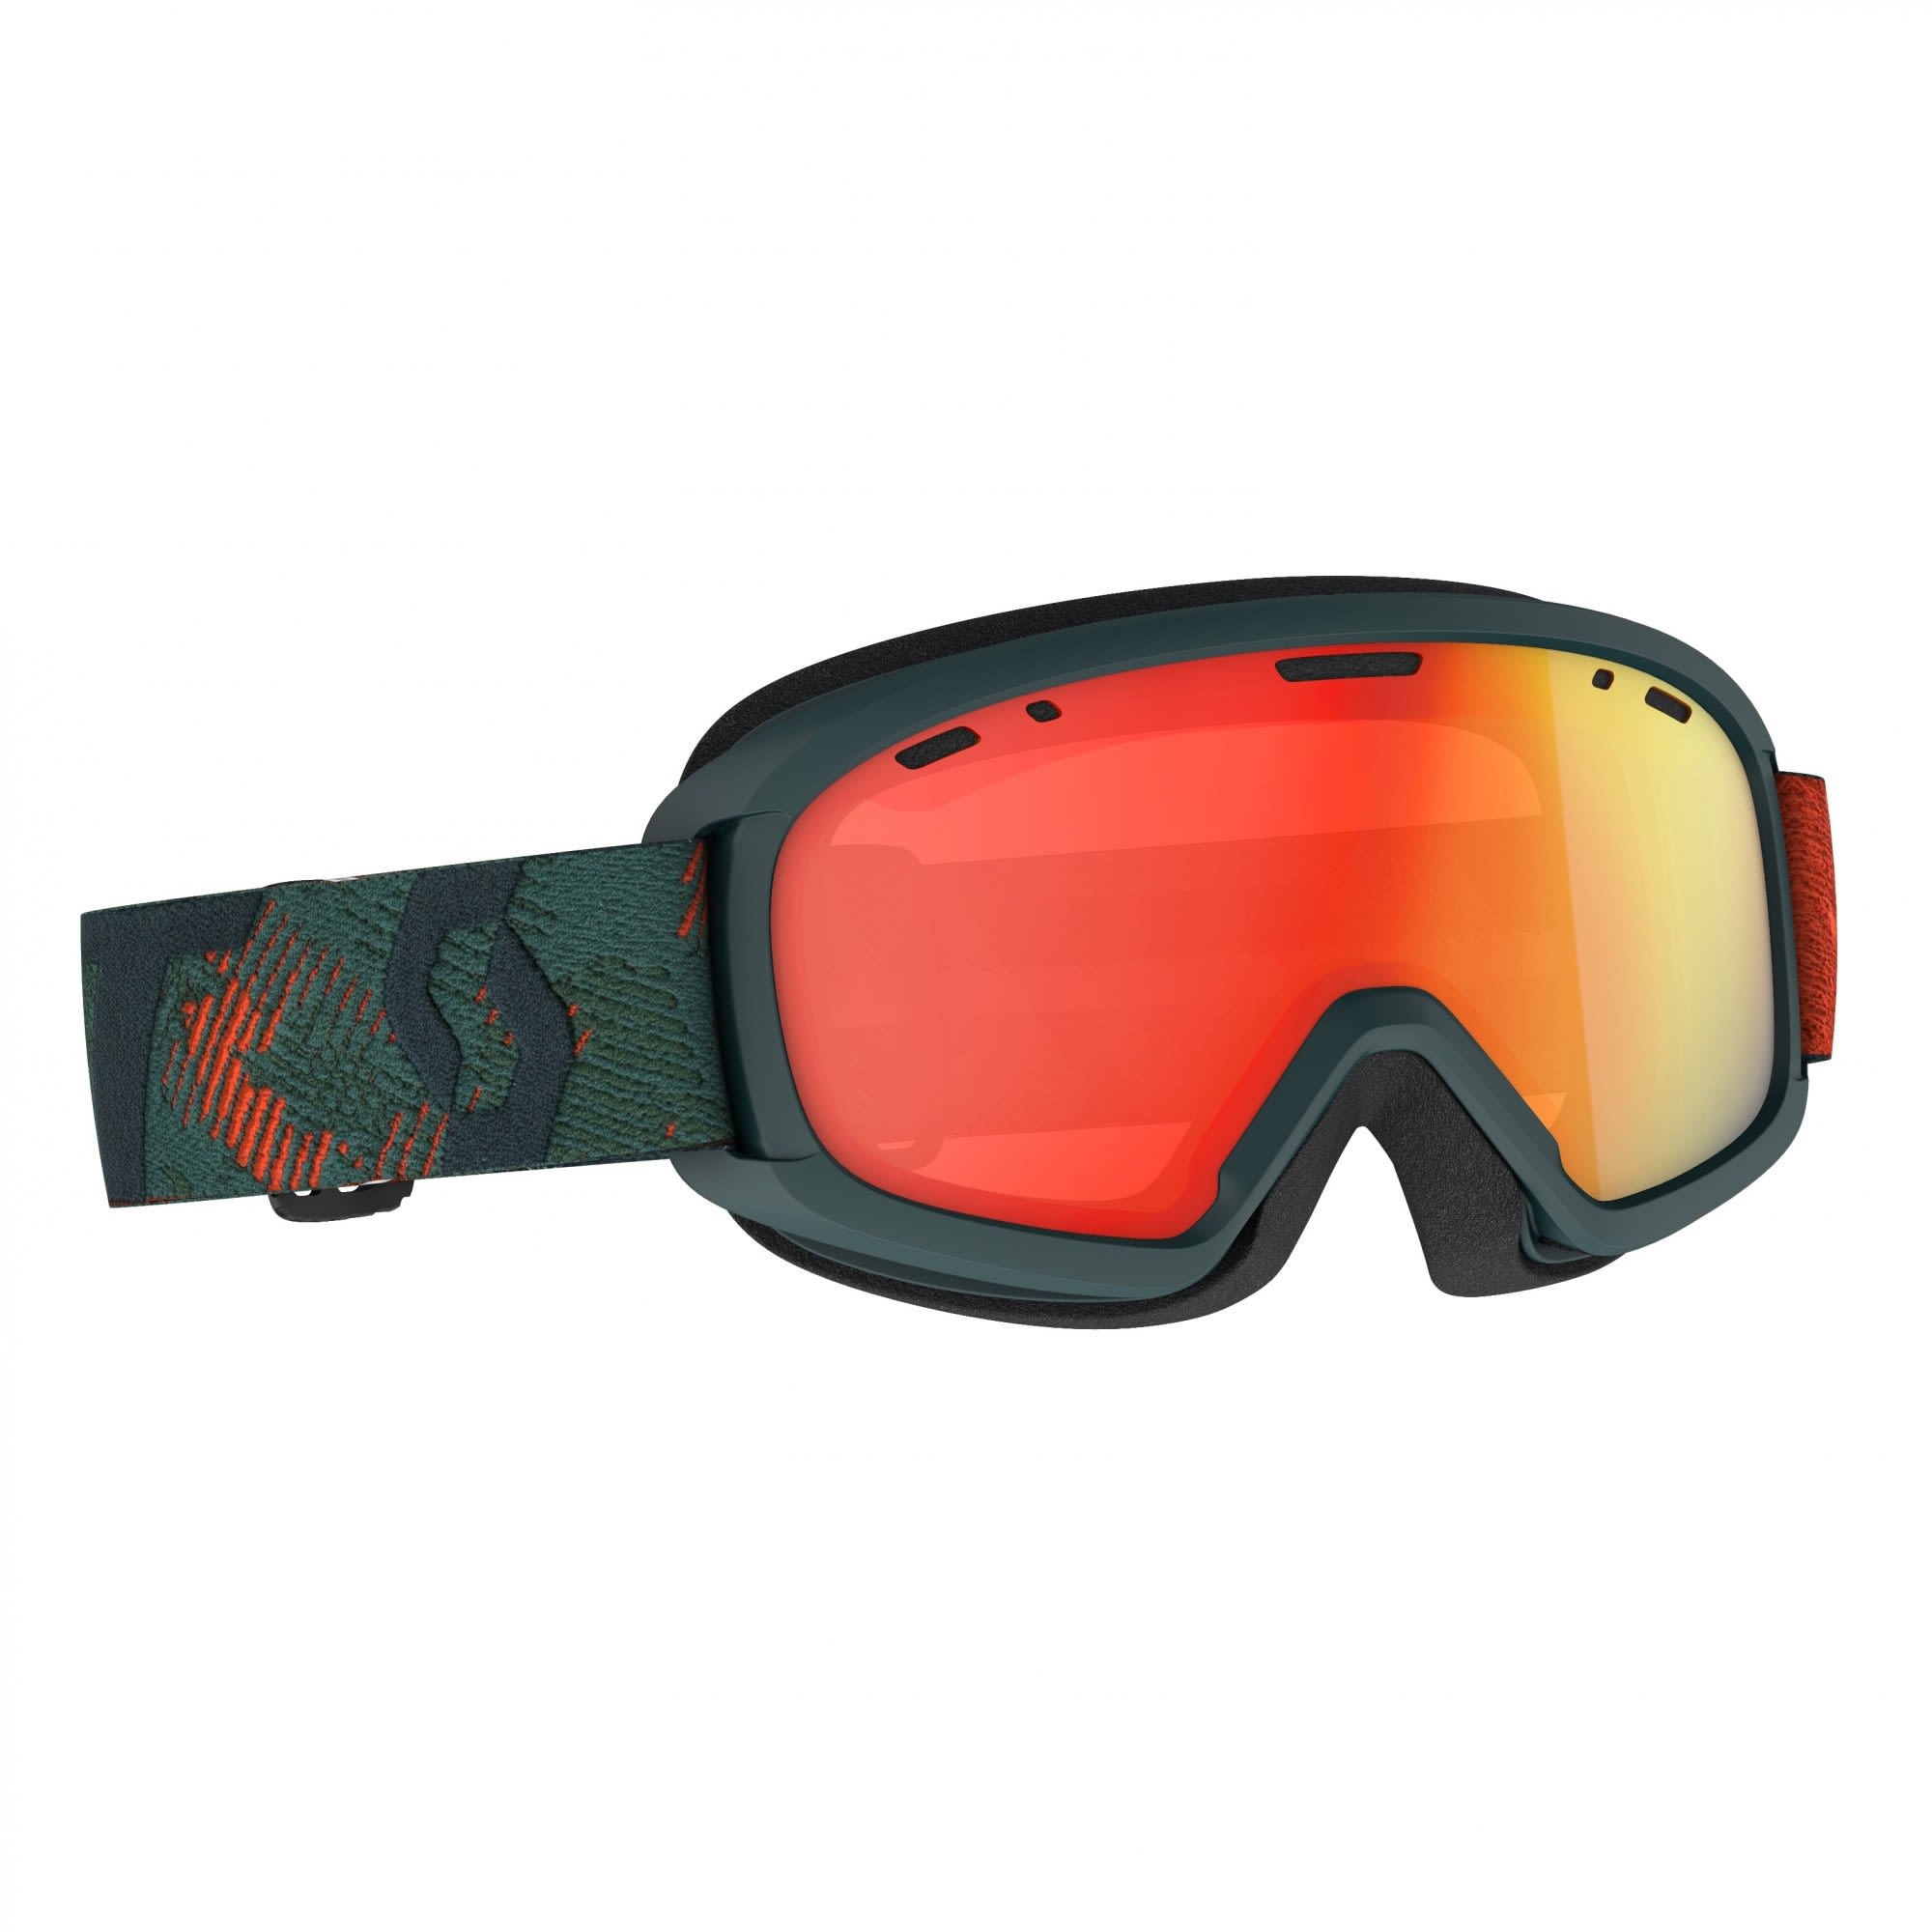 Scott Klassische verspiegelte Kinder Ski und Snowboardbrille Sombre Green - Pumpkin Orange - Enhancer Red Chrome